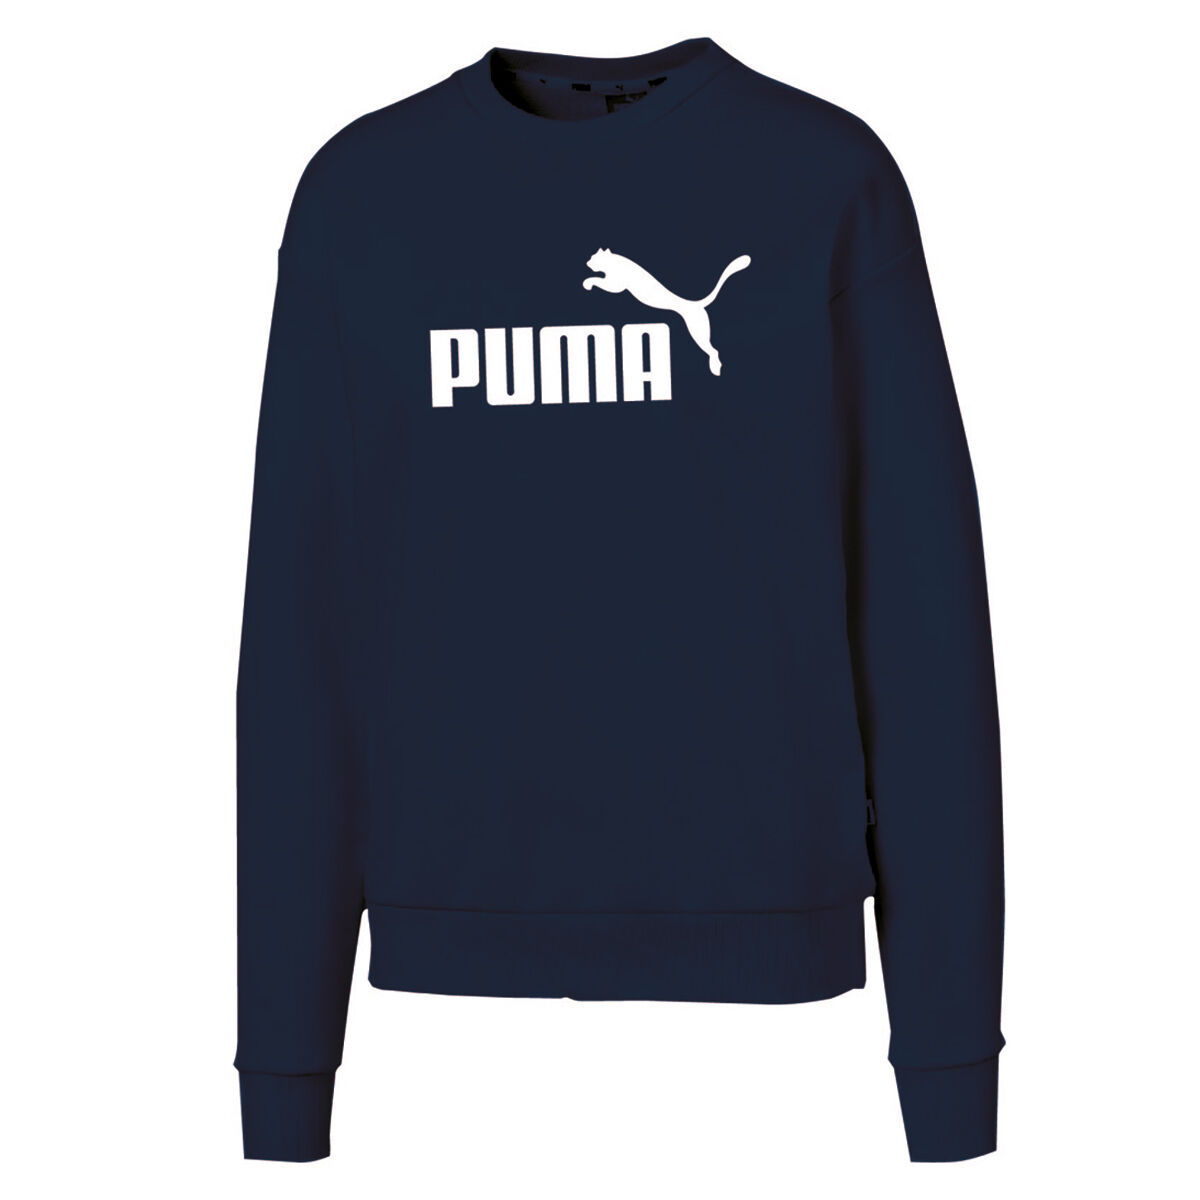 puma sweater blue